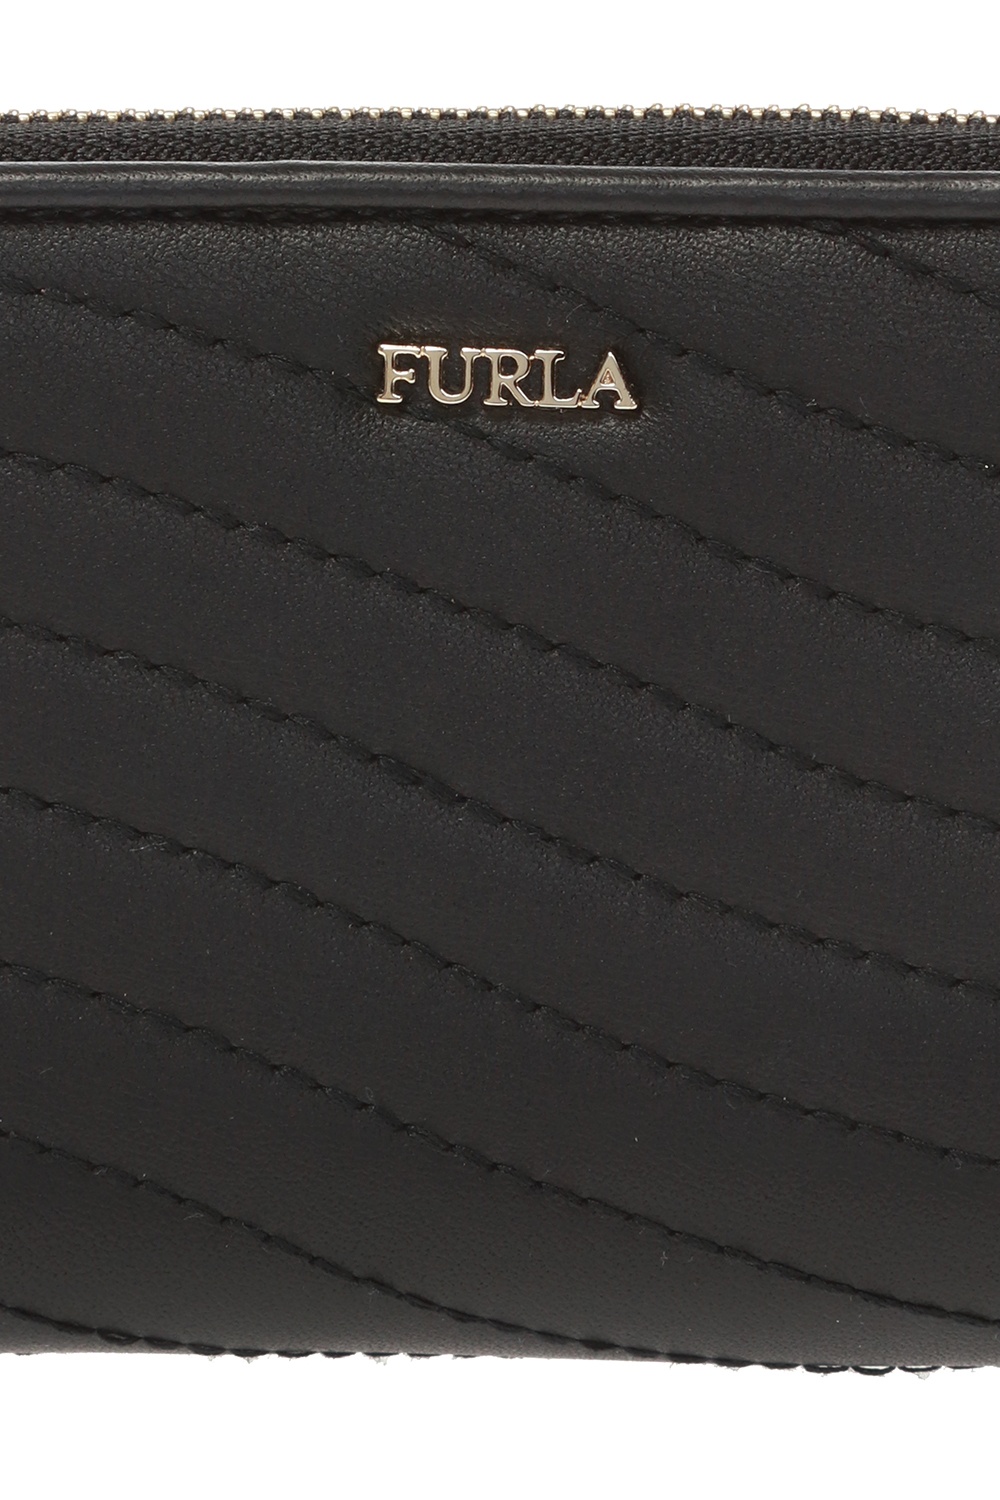 Furla ‘Swing’ wallet